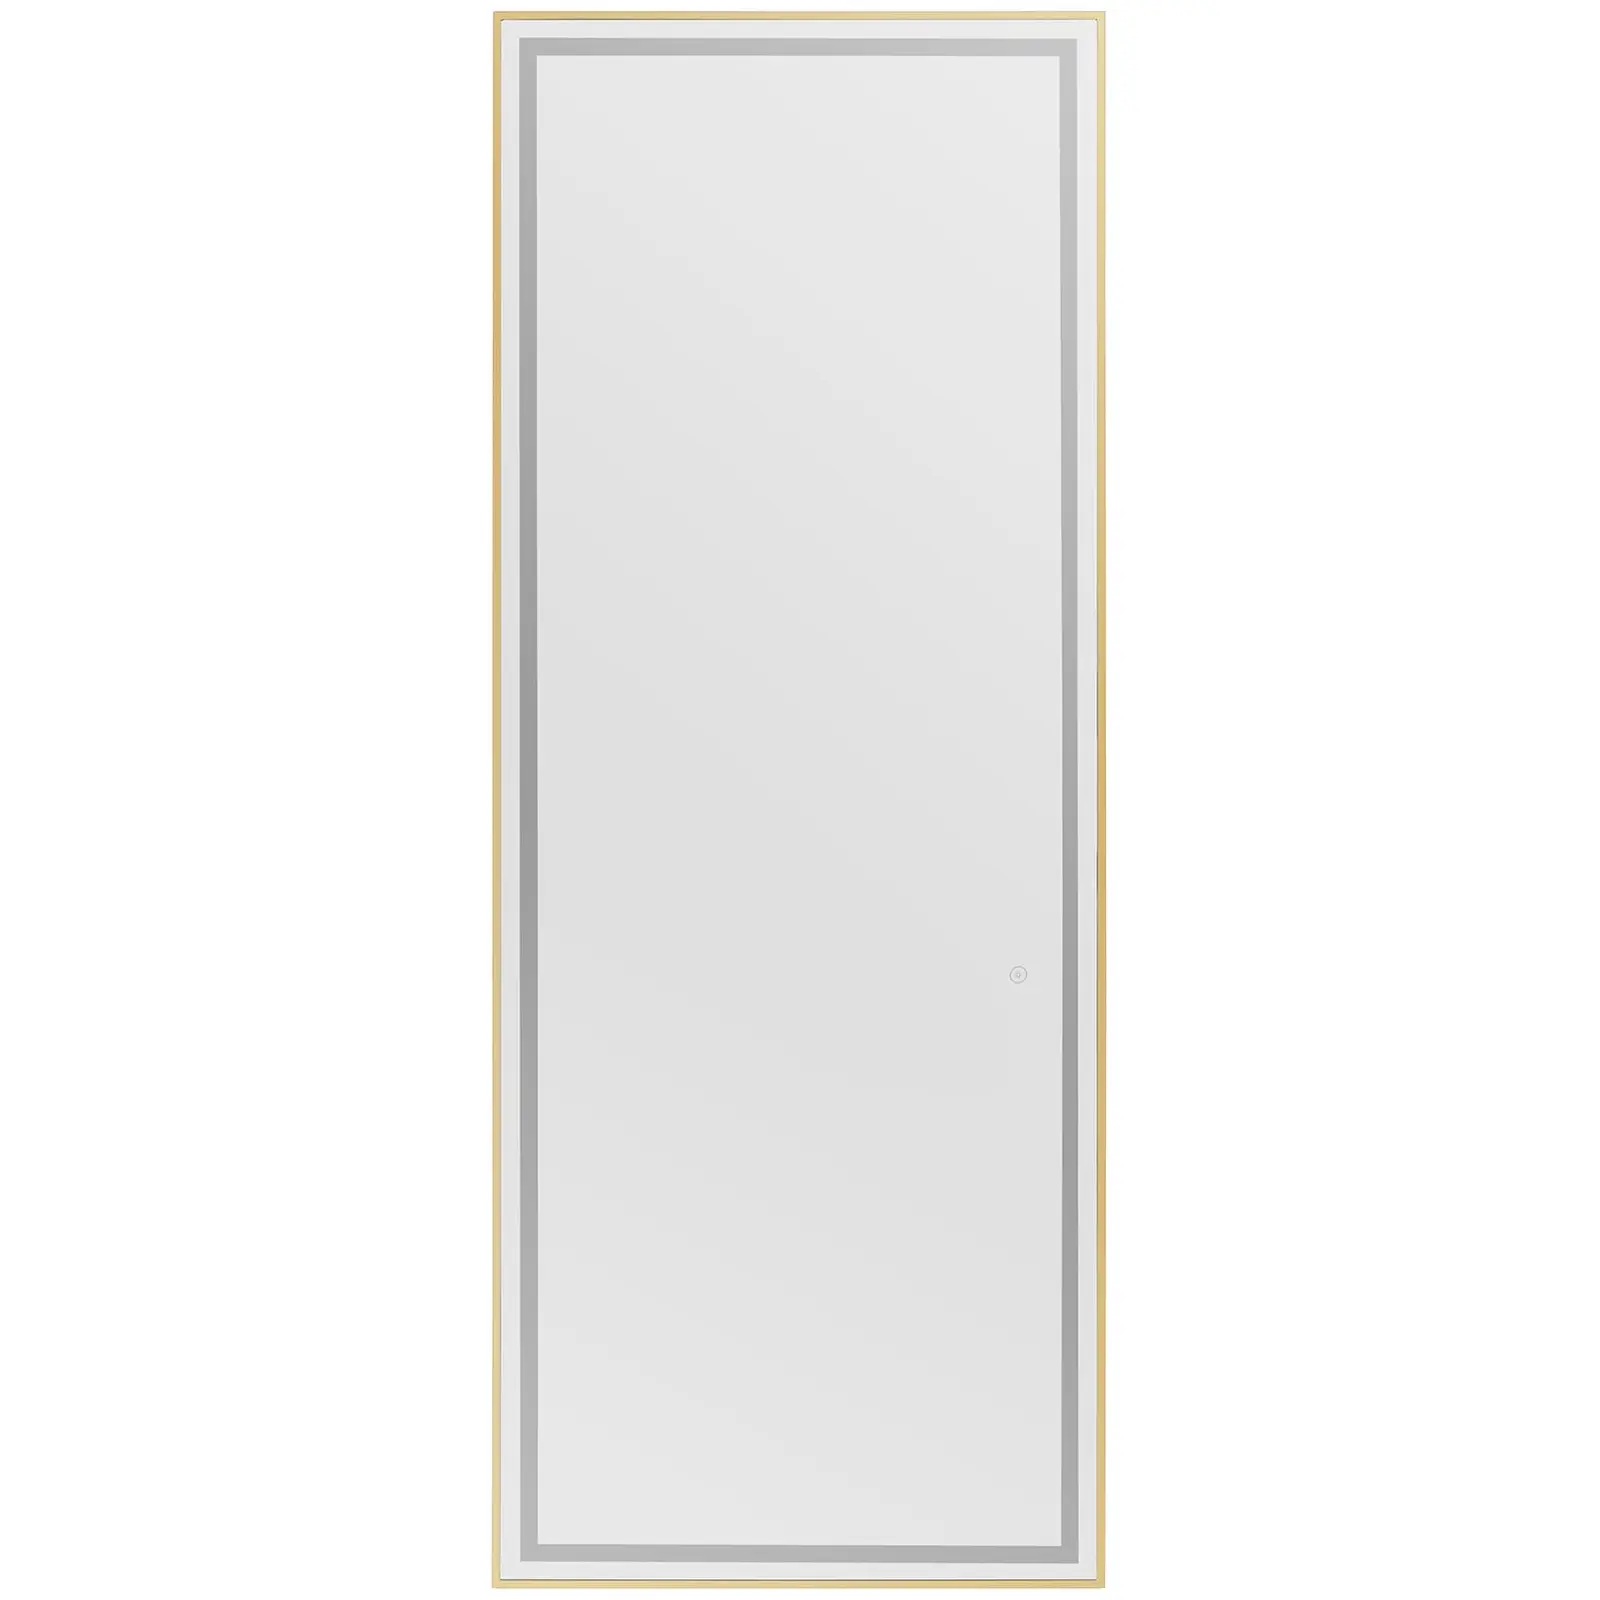 Espejo de peluquería - iluminación LED - extraplano - rectangular - 70 x 4 x 180 cm